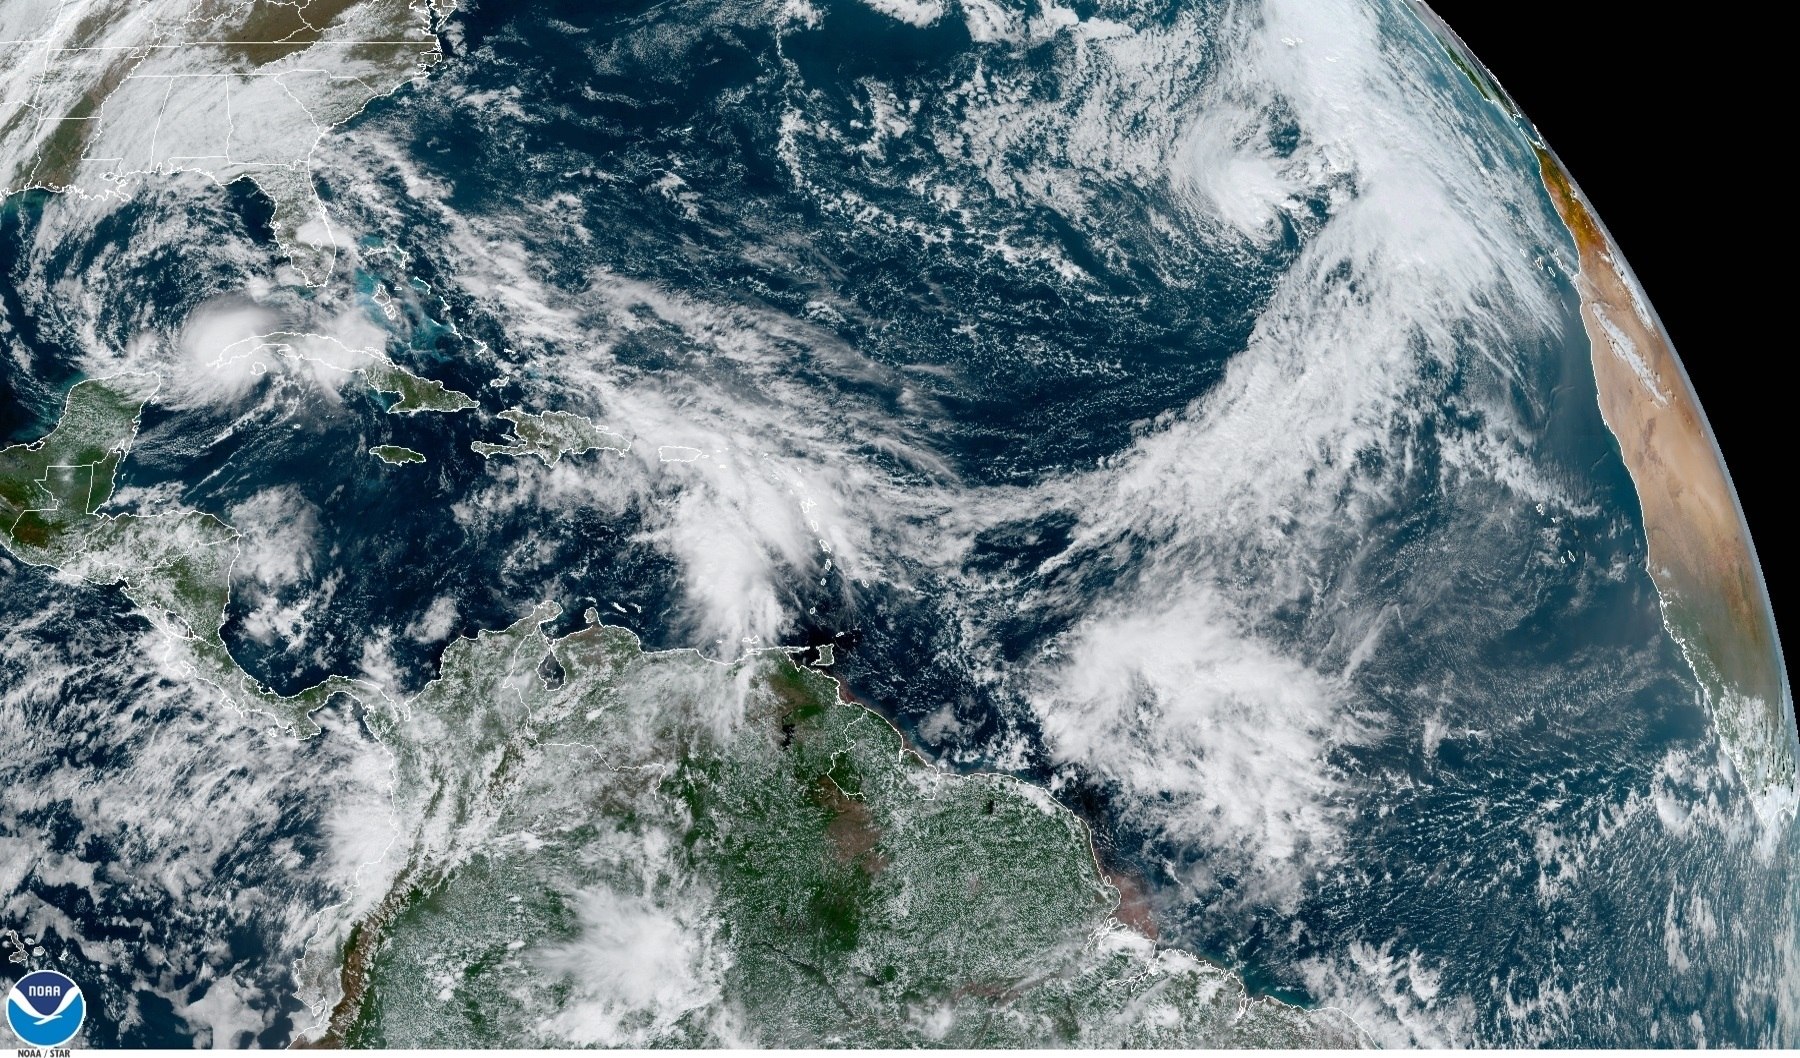 La tormenta Eta causa inundaciones y lluvias torrenciales en Florida tras devastar Centroamérica